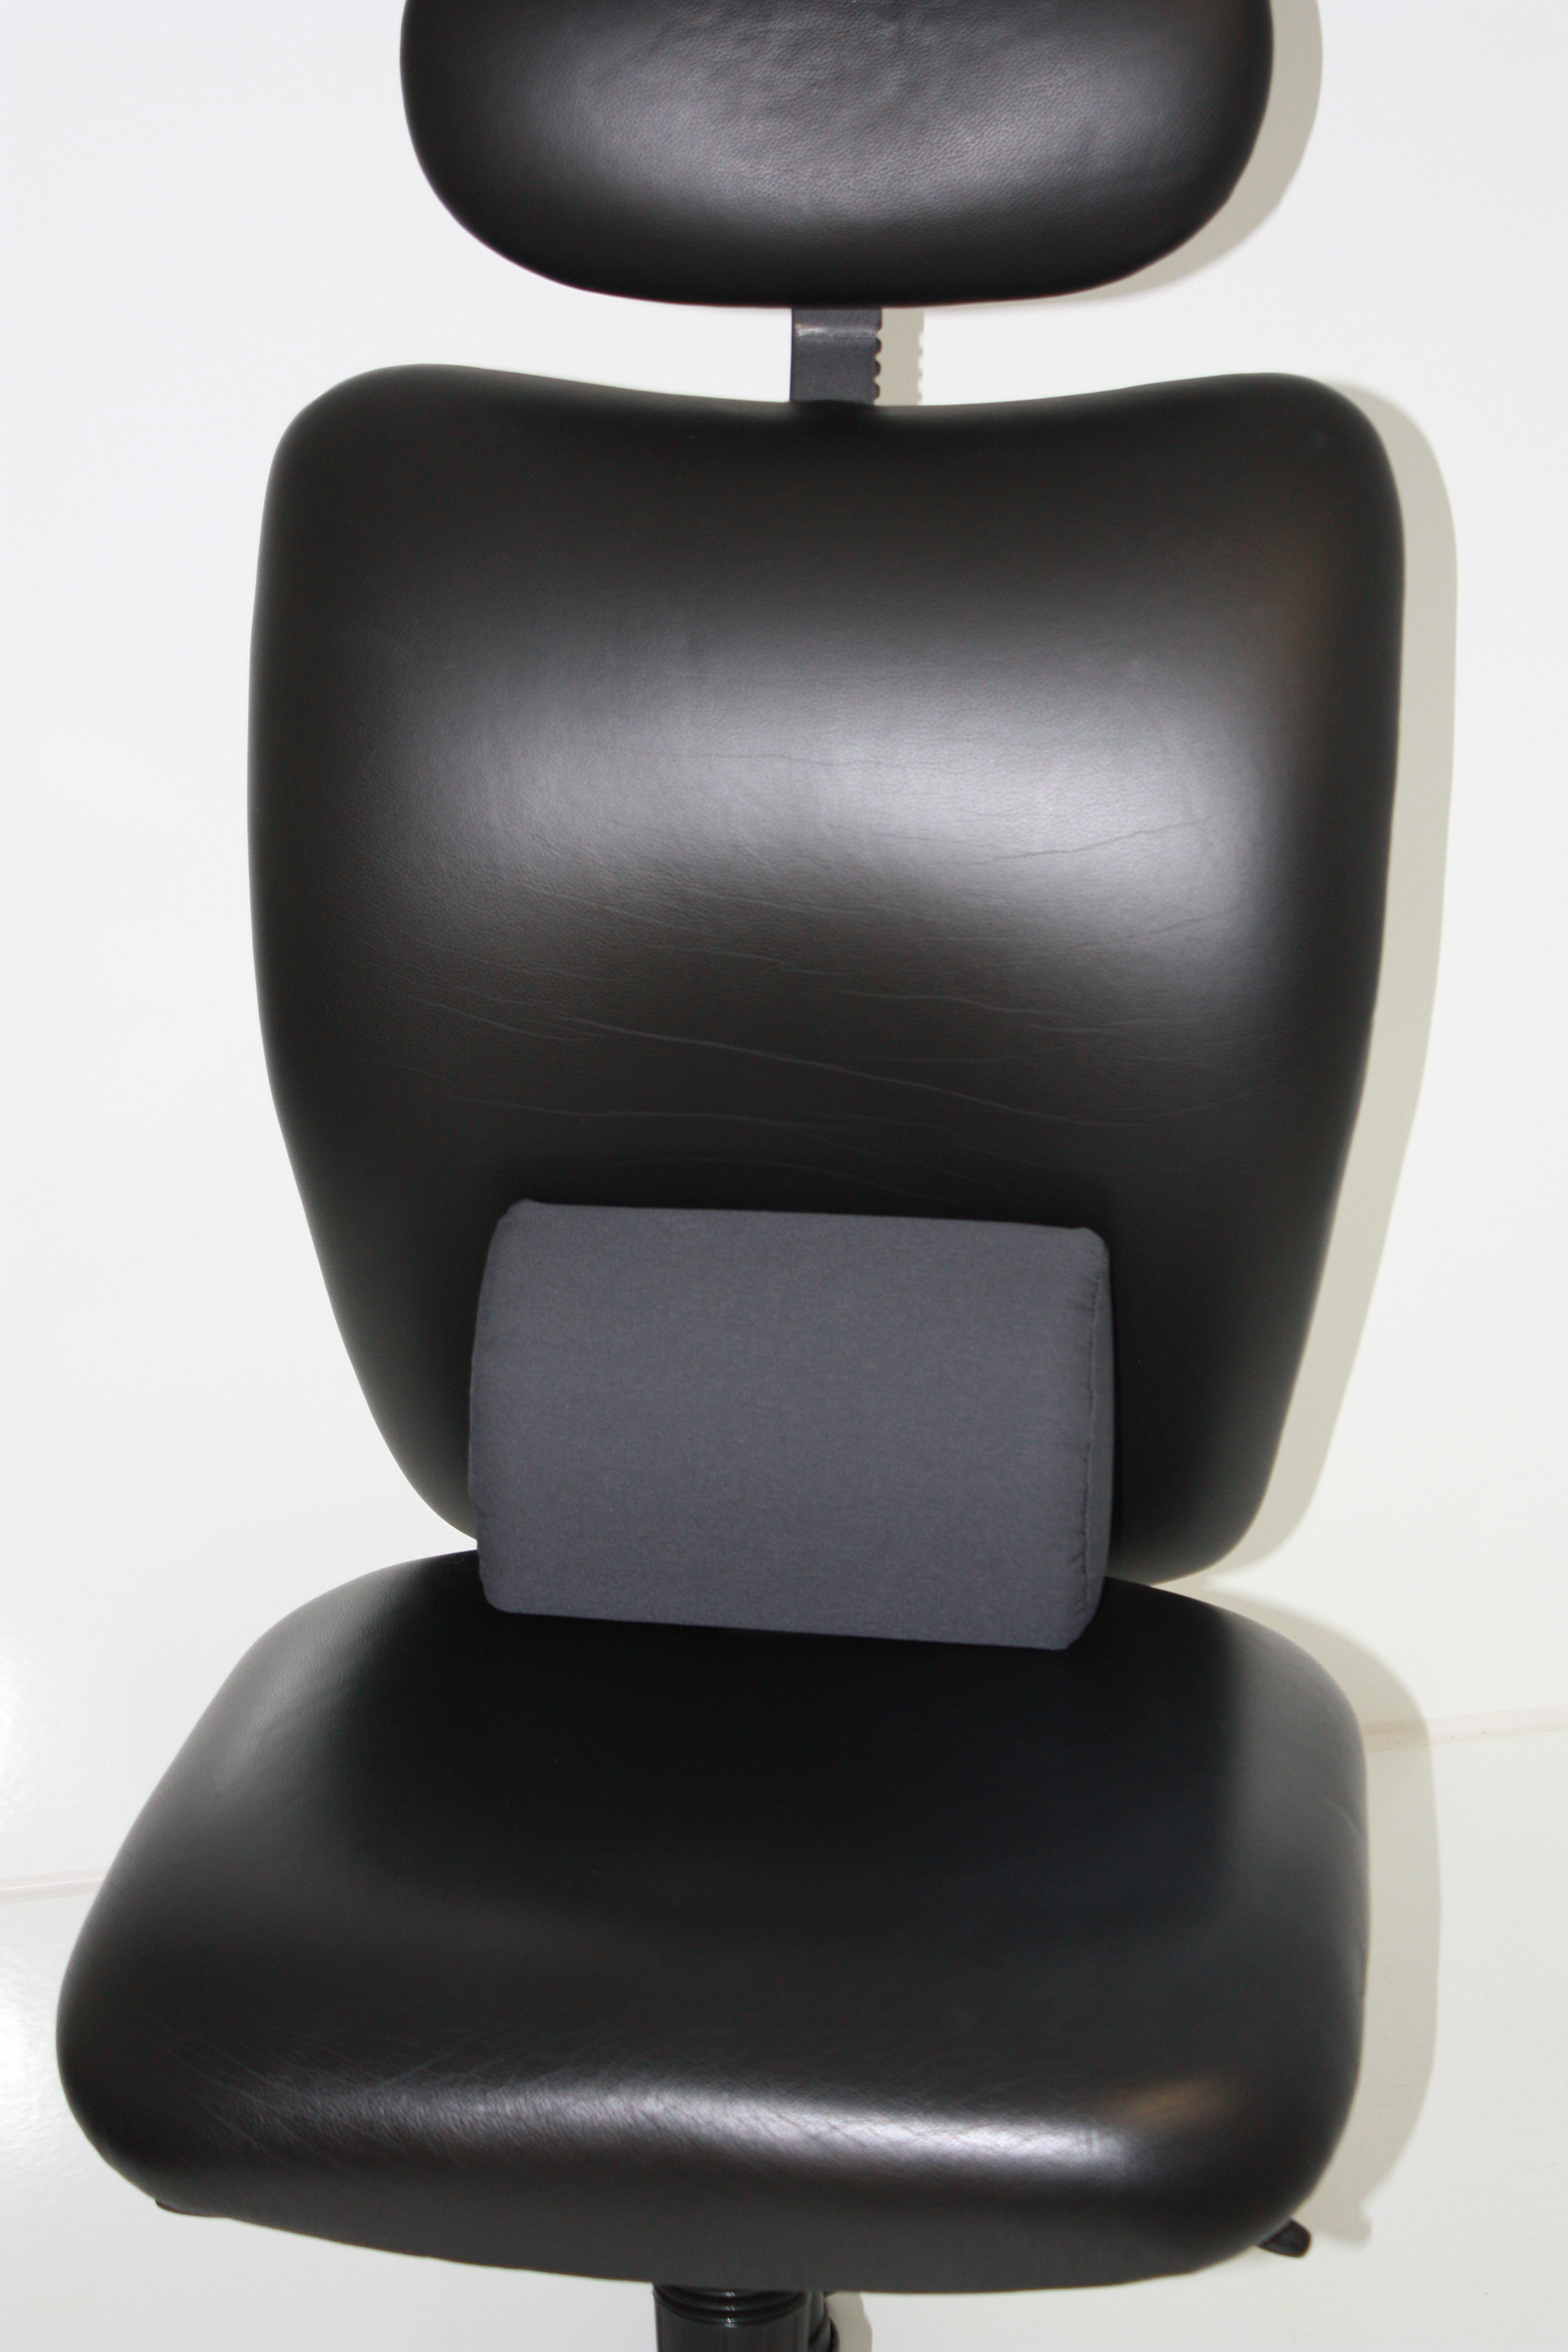 https://jobri.com/wp-content/uploads/2014/09/2001GR-in-Black-Chair-2.jpg